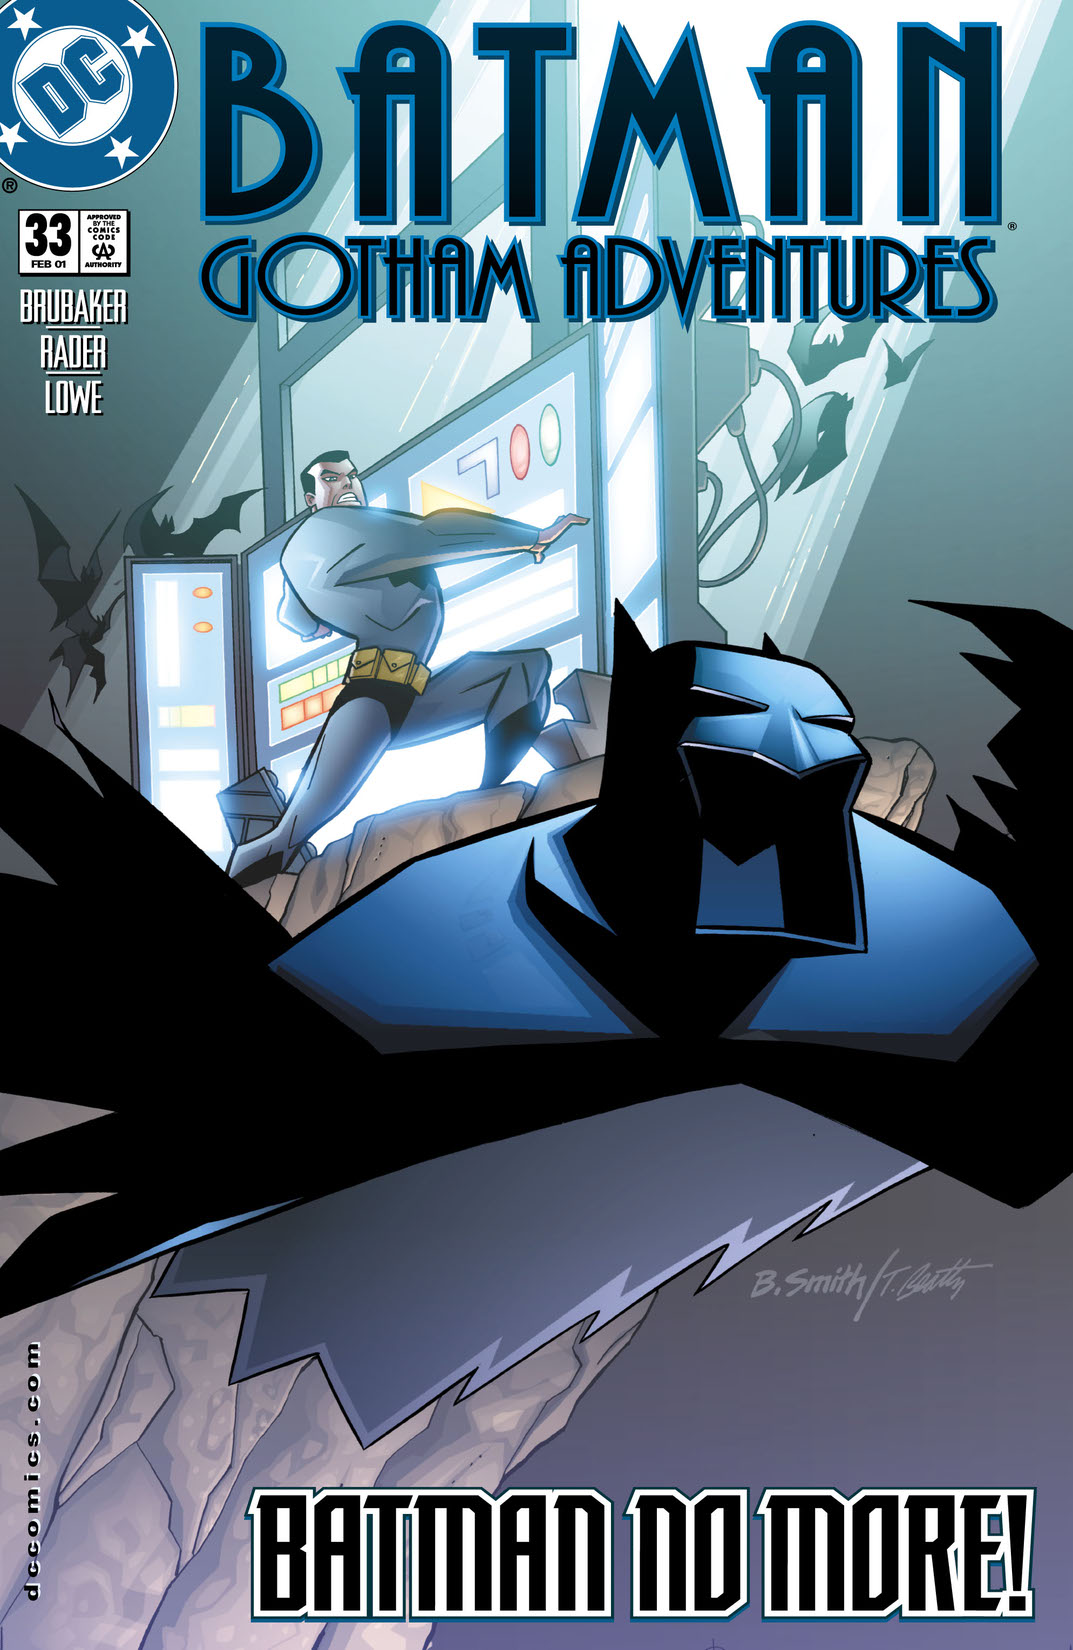 Batman: Gotham Adventures #33 preview images